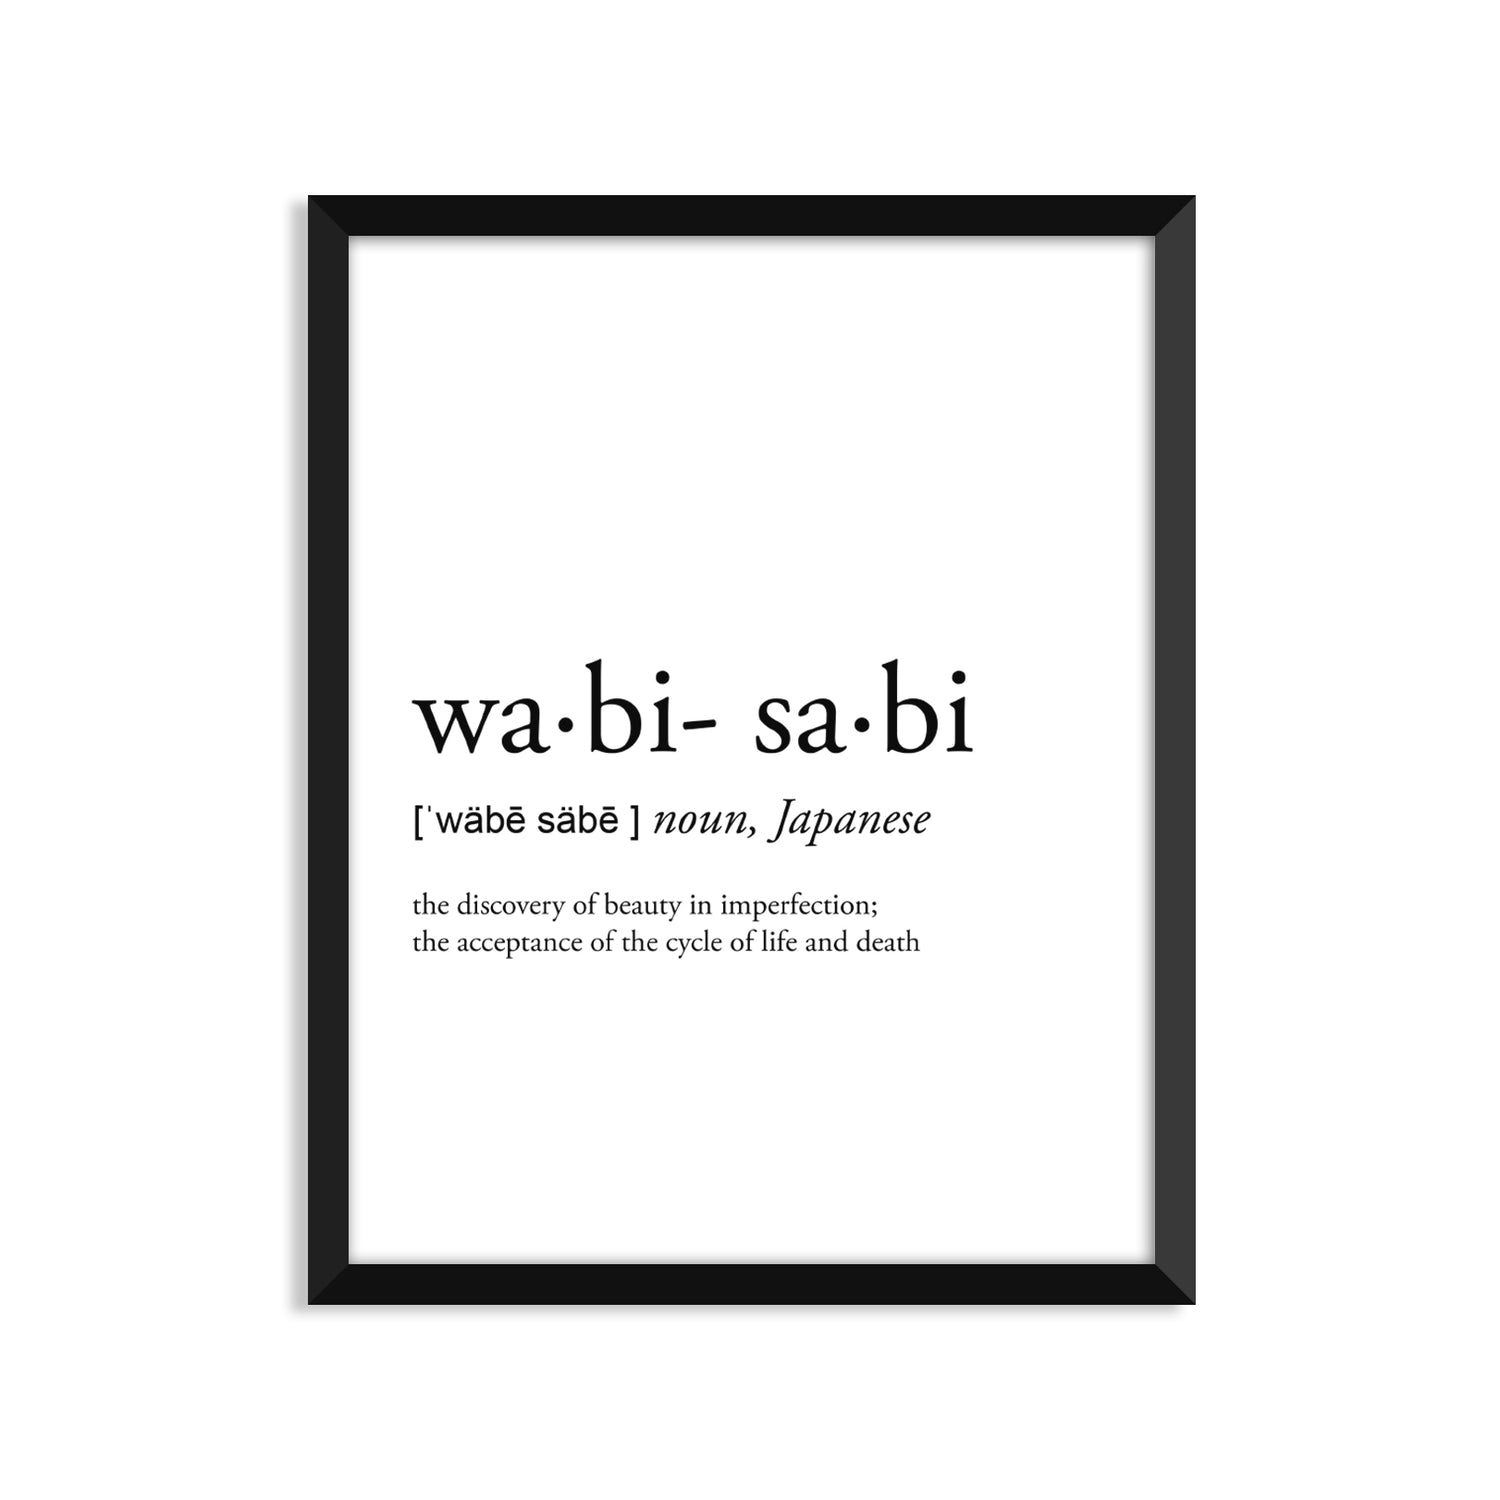 Wabi-Sabi Definition Everyday Card